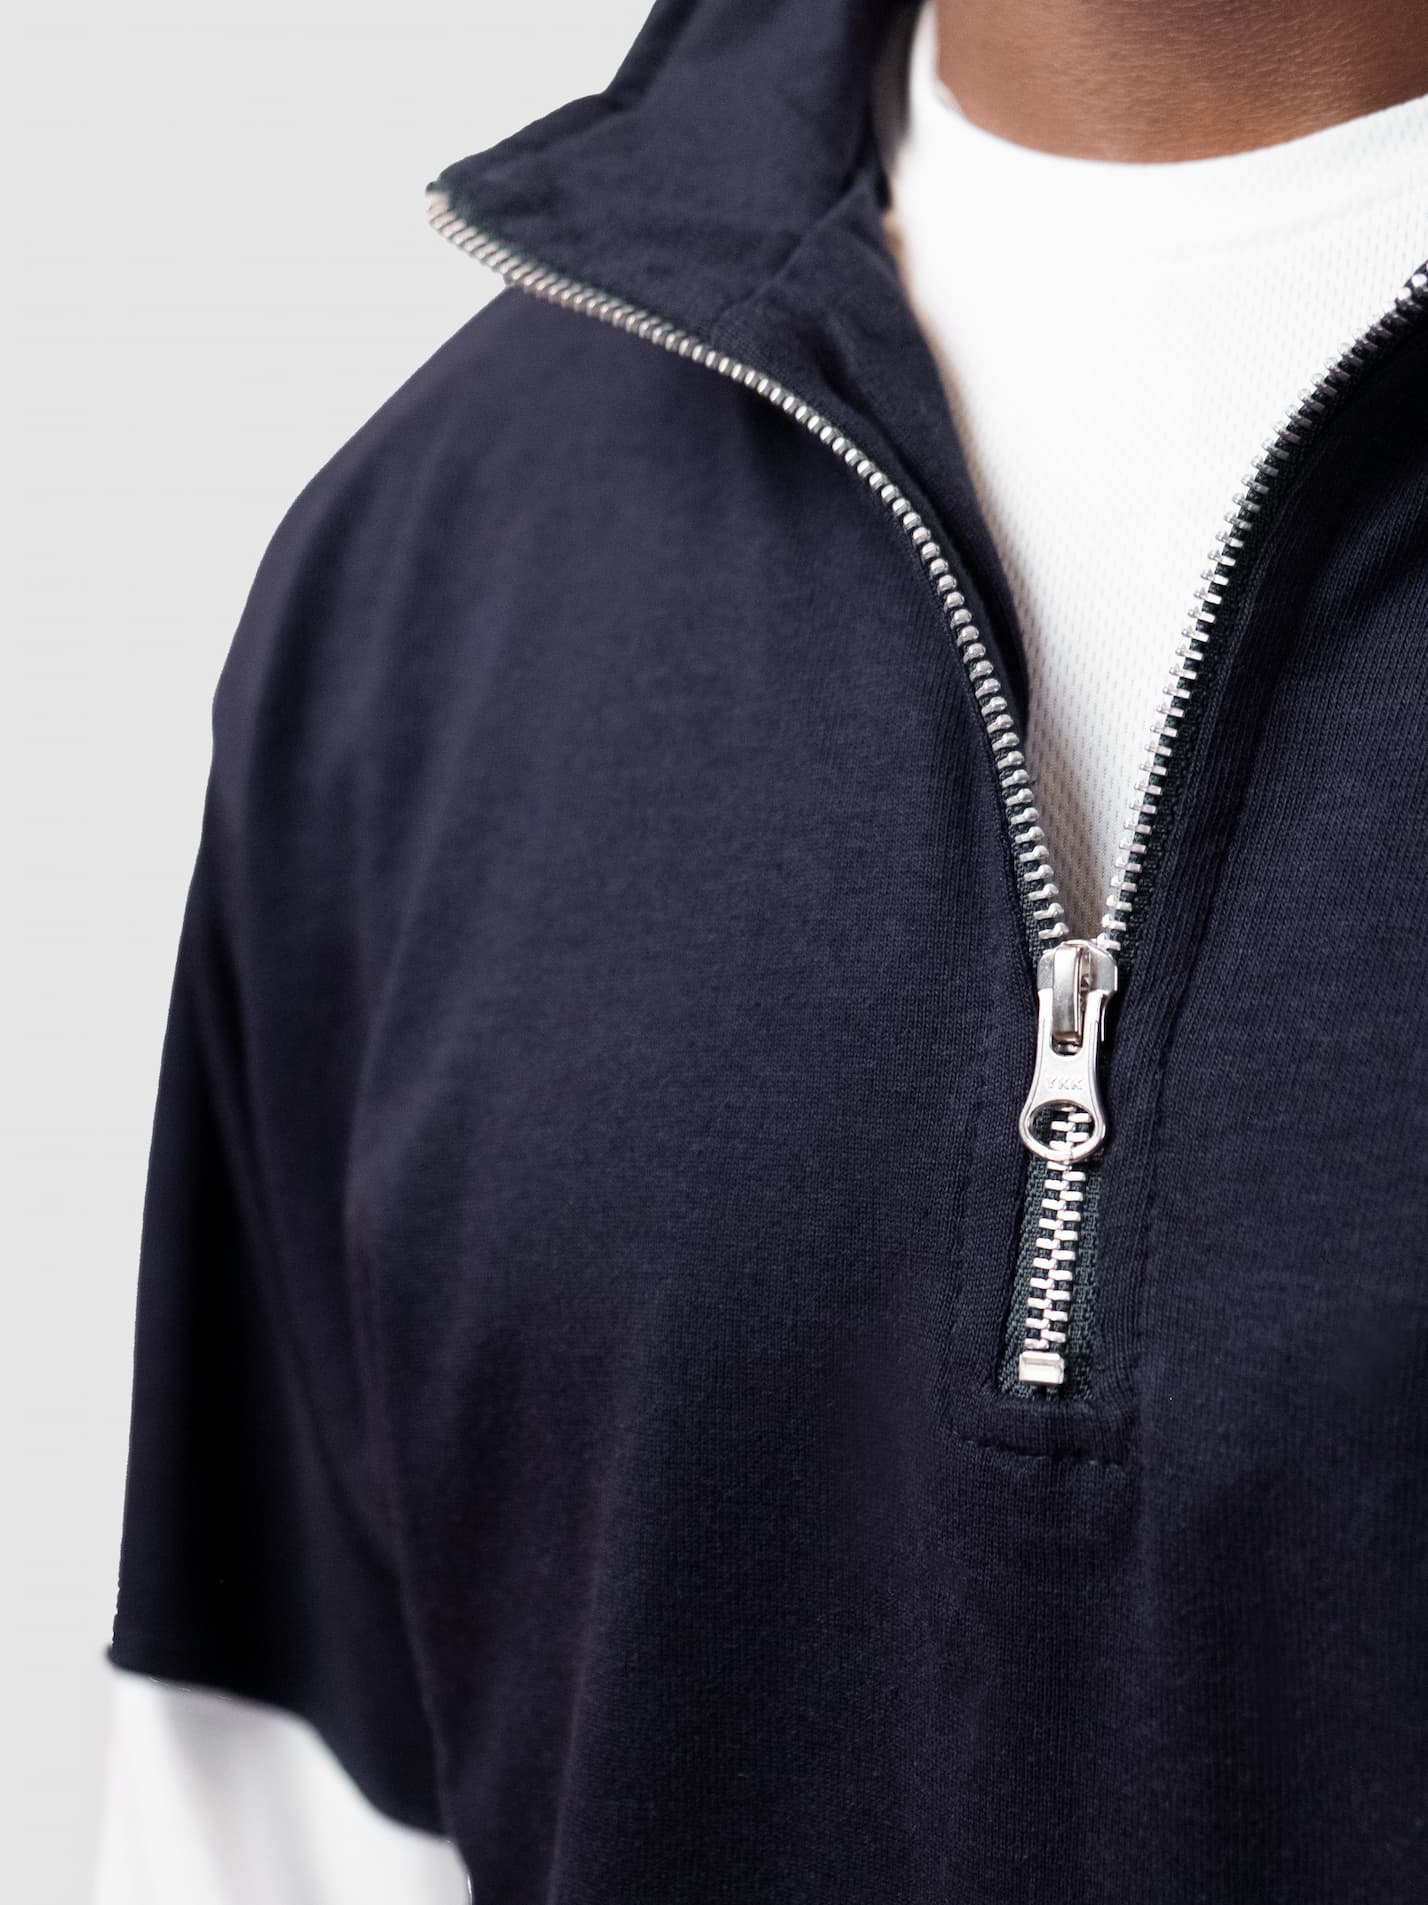 Emmanuel College Cambridge Unisex Panelled 1/4 Zip Sweatshirt